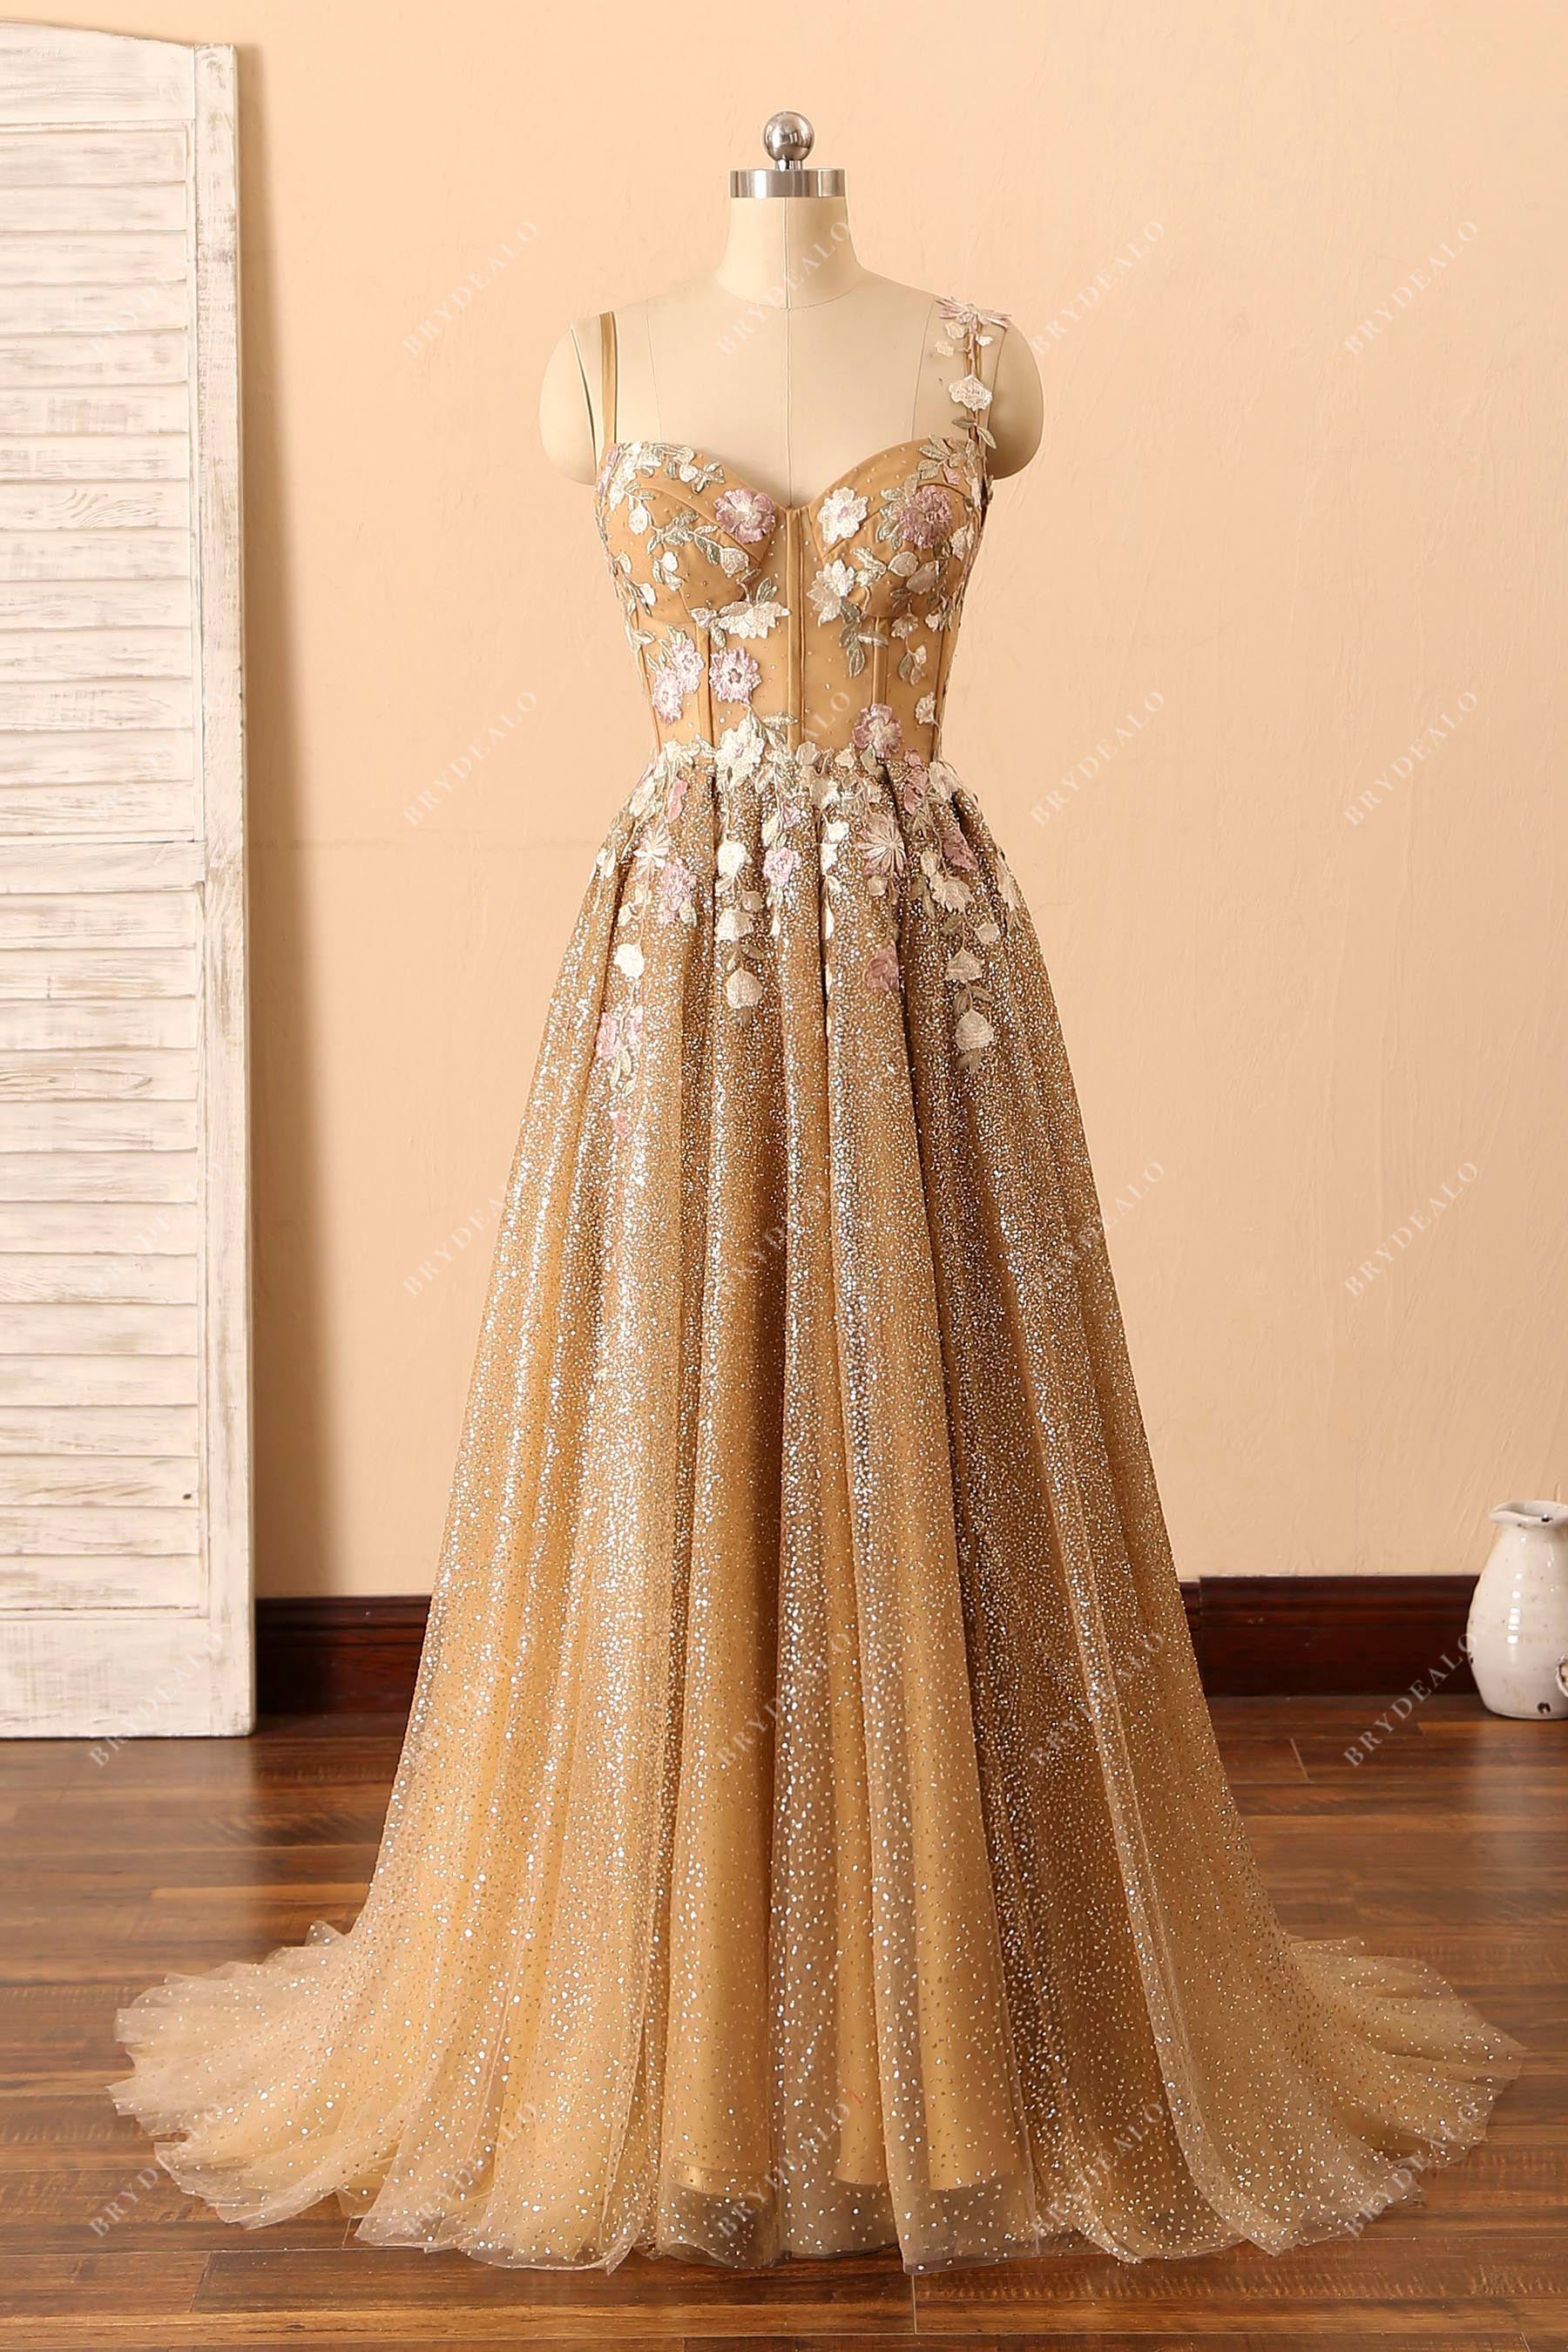 http://brydealofactory.com/cdn/shop/products/flowers-gold-glitter-corset-thin-straps-formal-dress.jpg?v=1650468613&width=2048